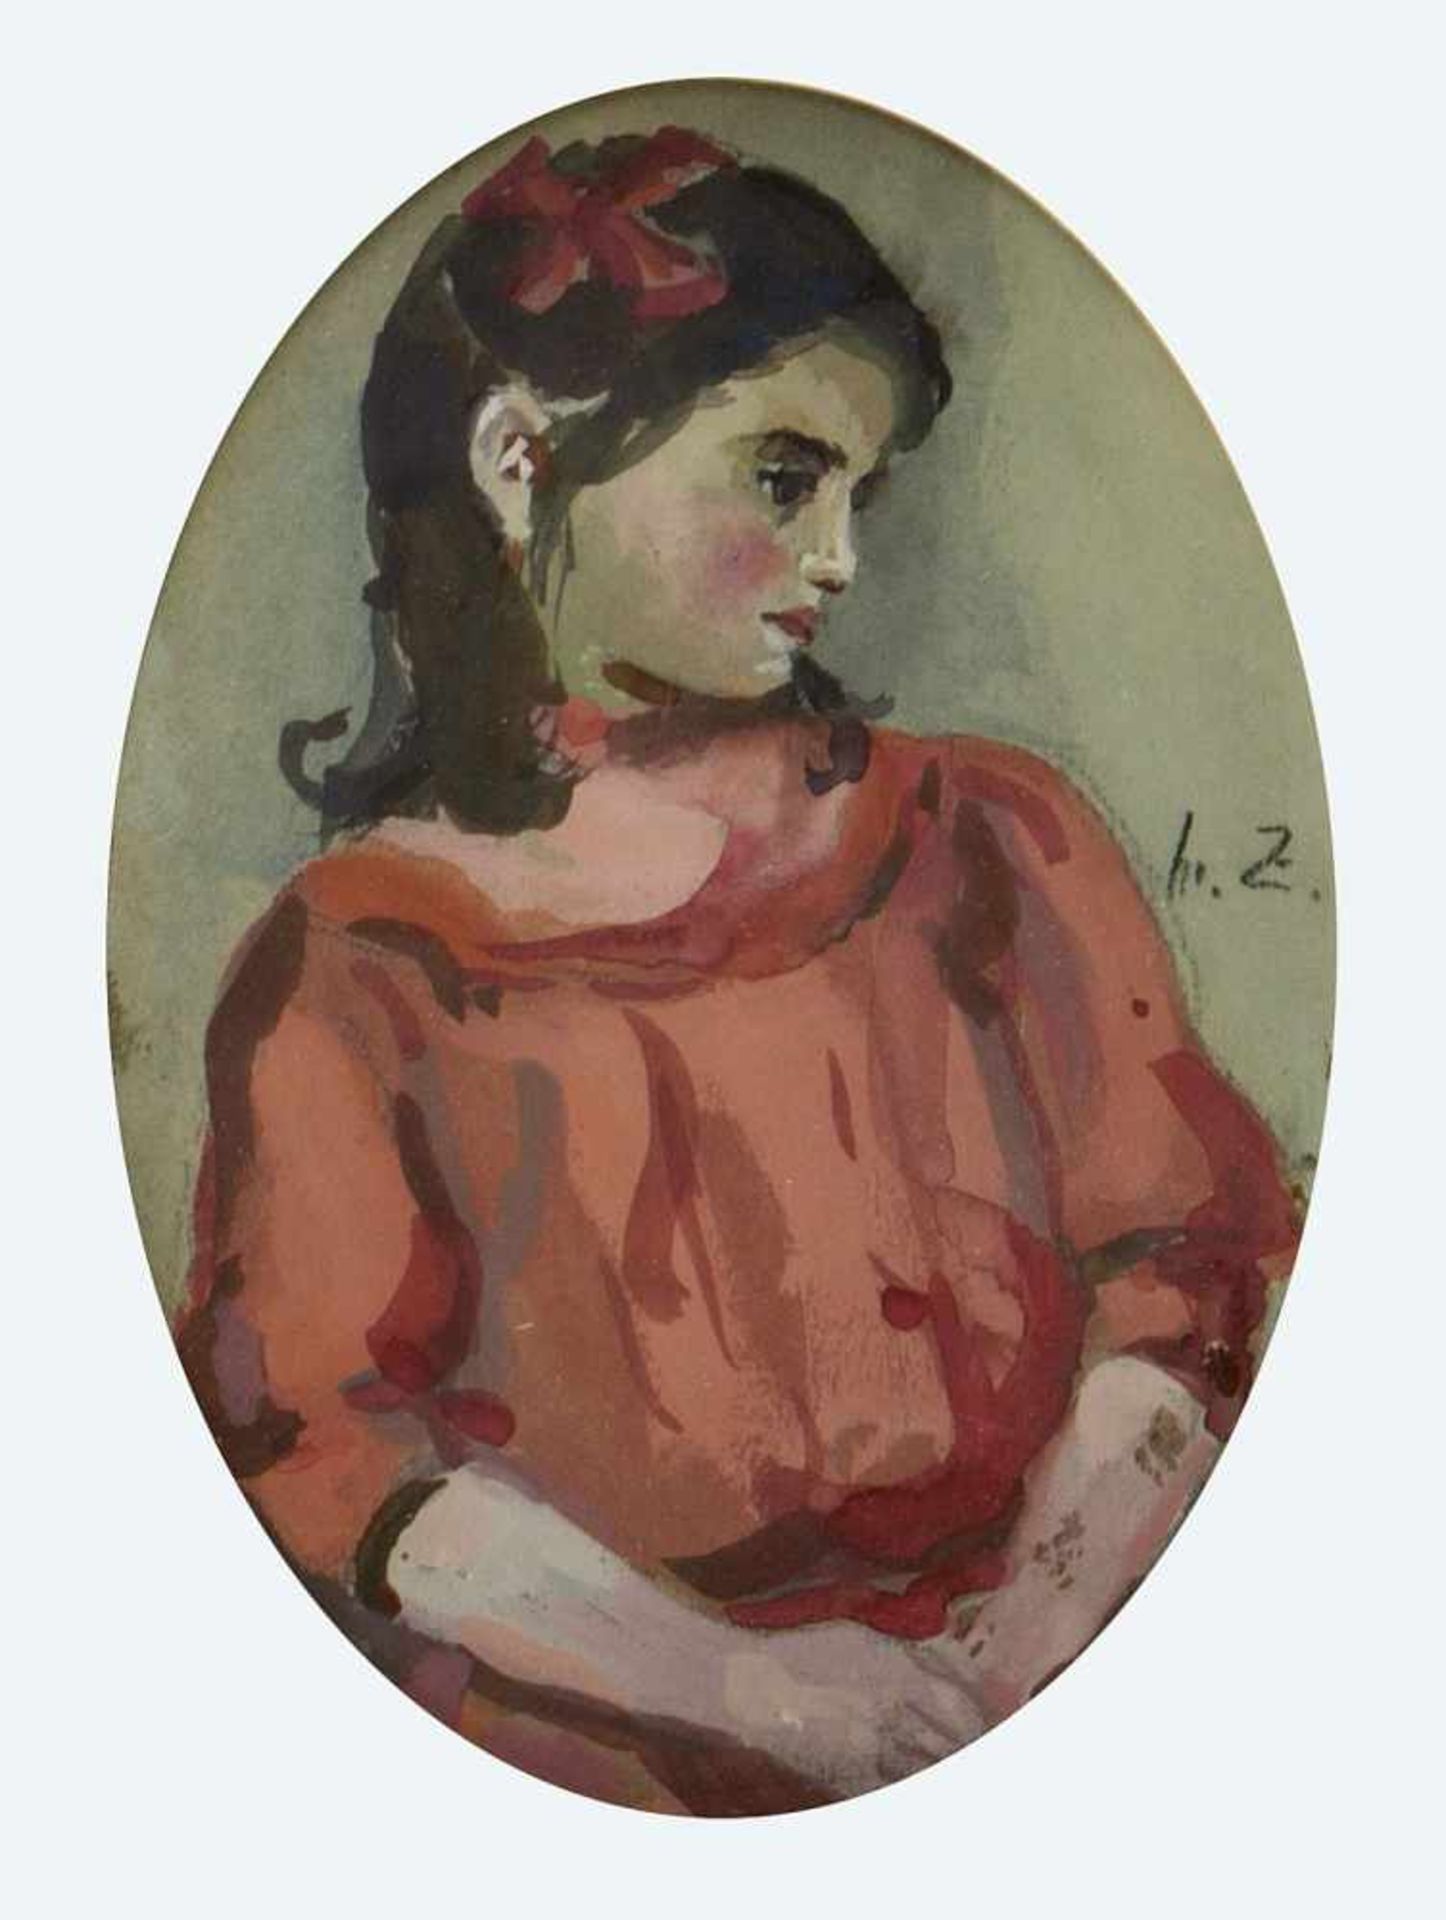 Monogrammist H.Z.Brustbild eines Mädchens im roten Kleid. Gouache. Monogr. 18 x 13 cm.